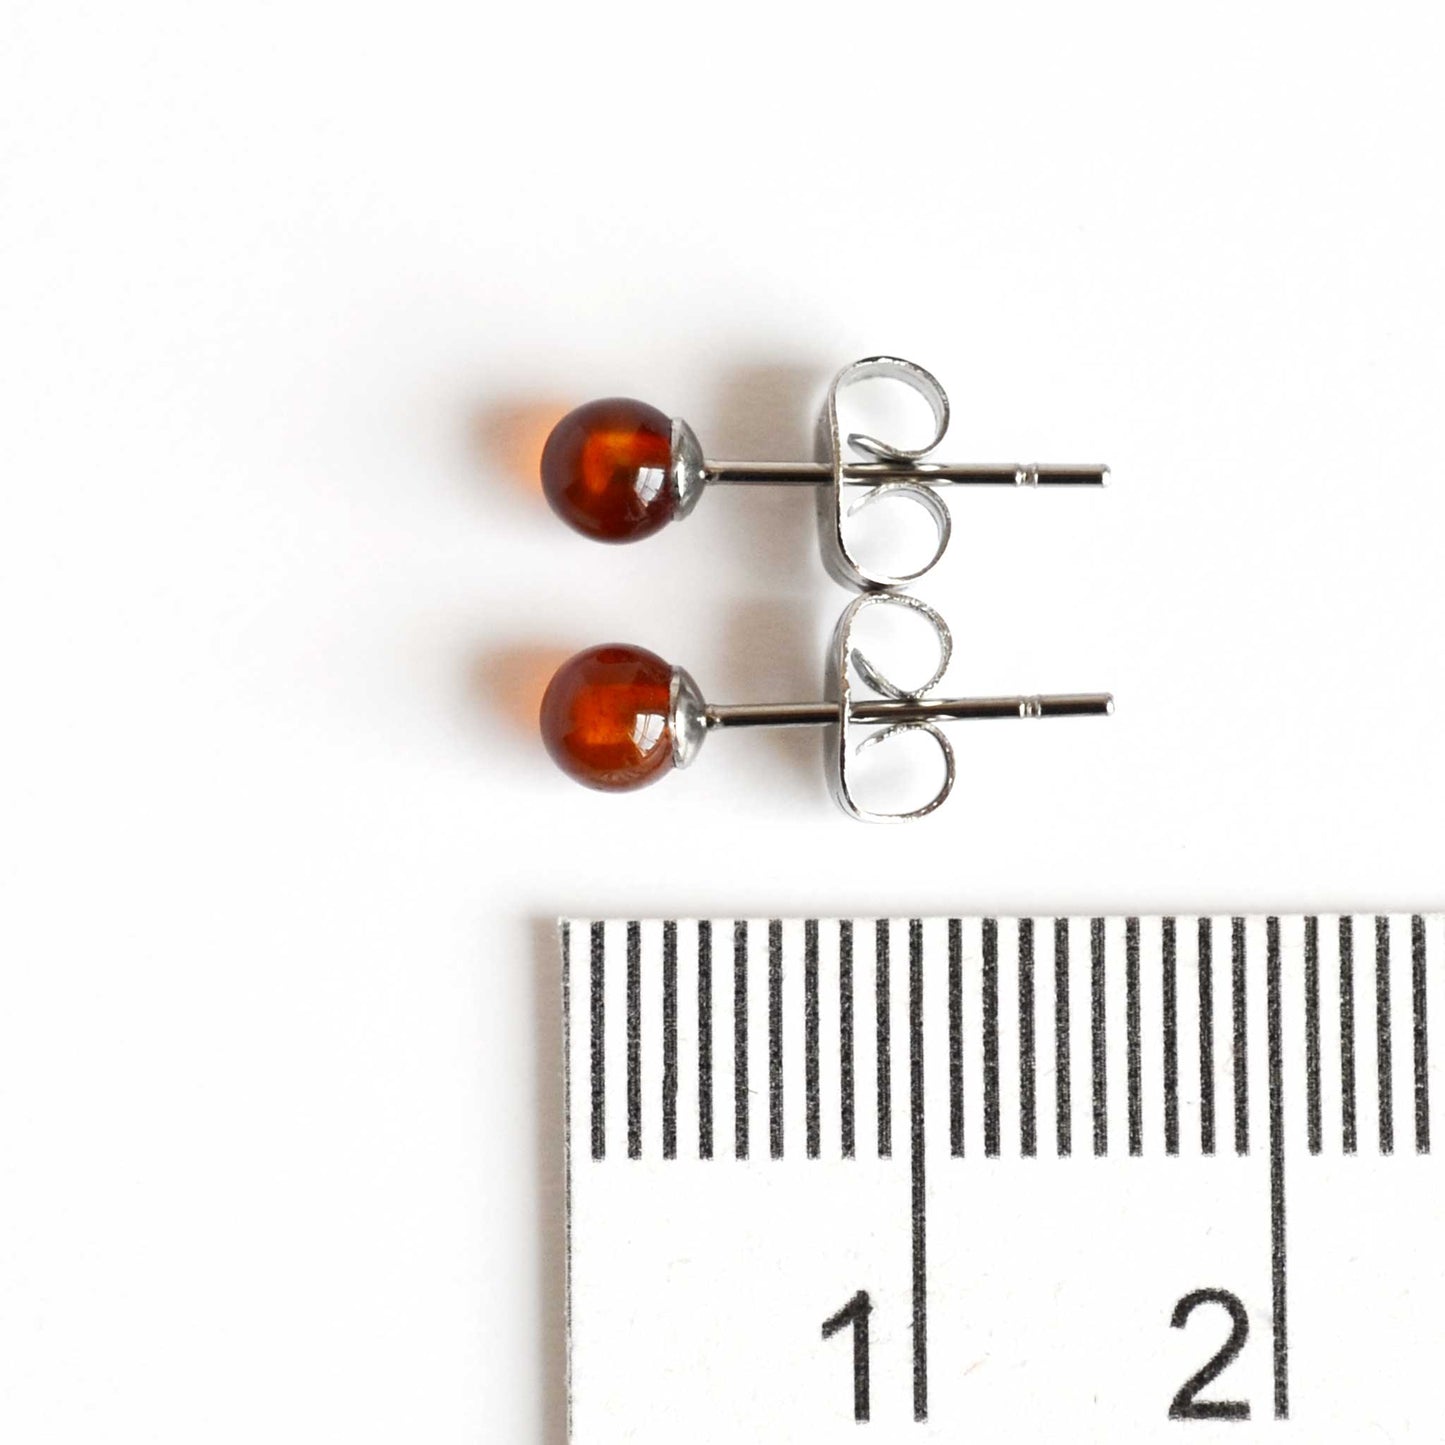 4mm Carnelian stud earrings next to ruler